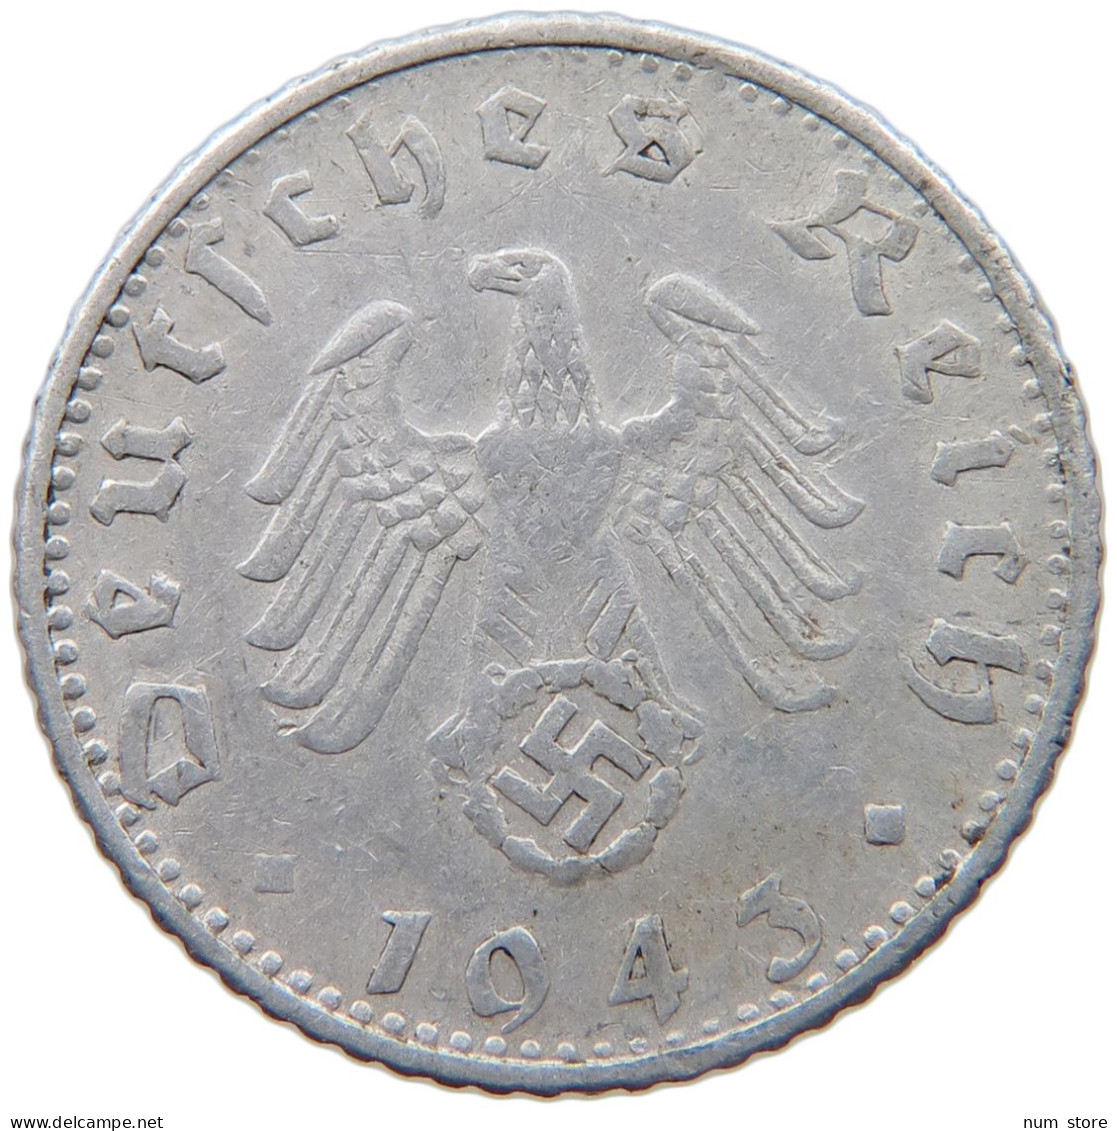 GERMANY 50 REICHSPFENNIG 1943 D #s089 0501 - 50 Reichspfennig